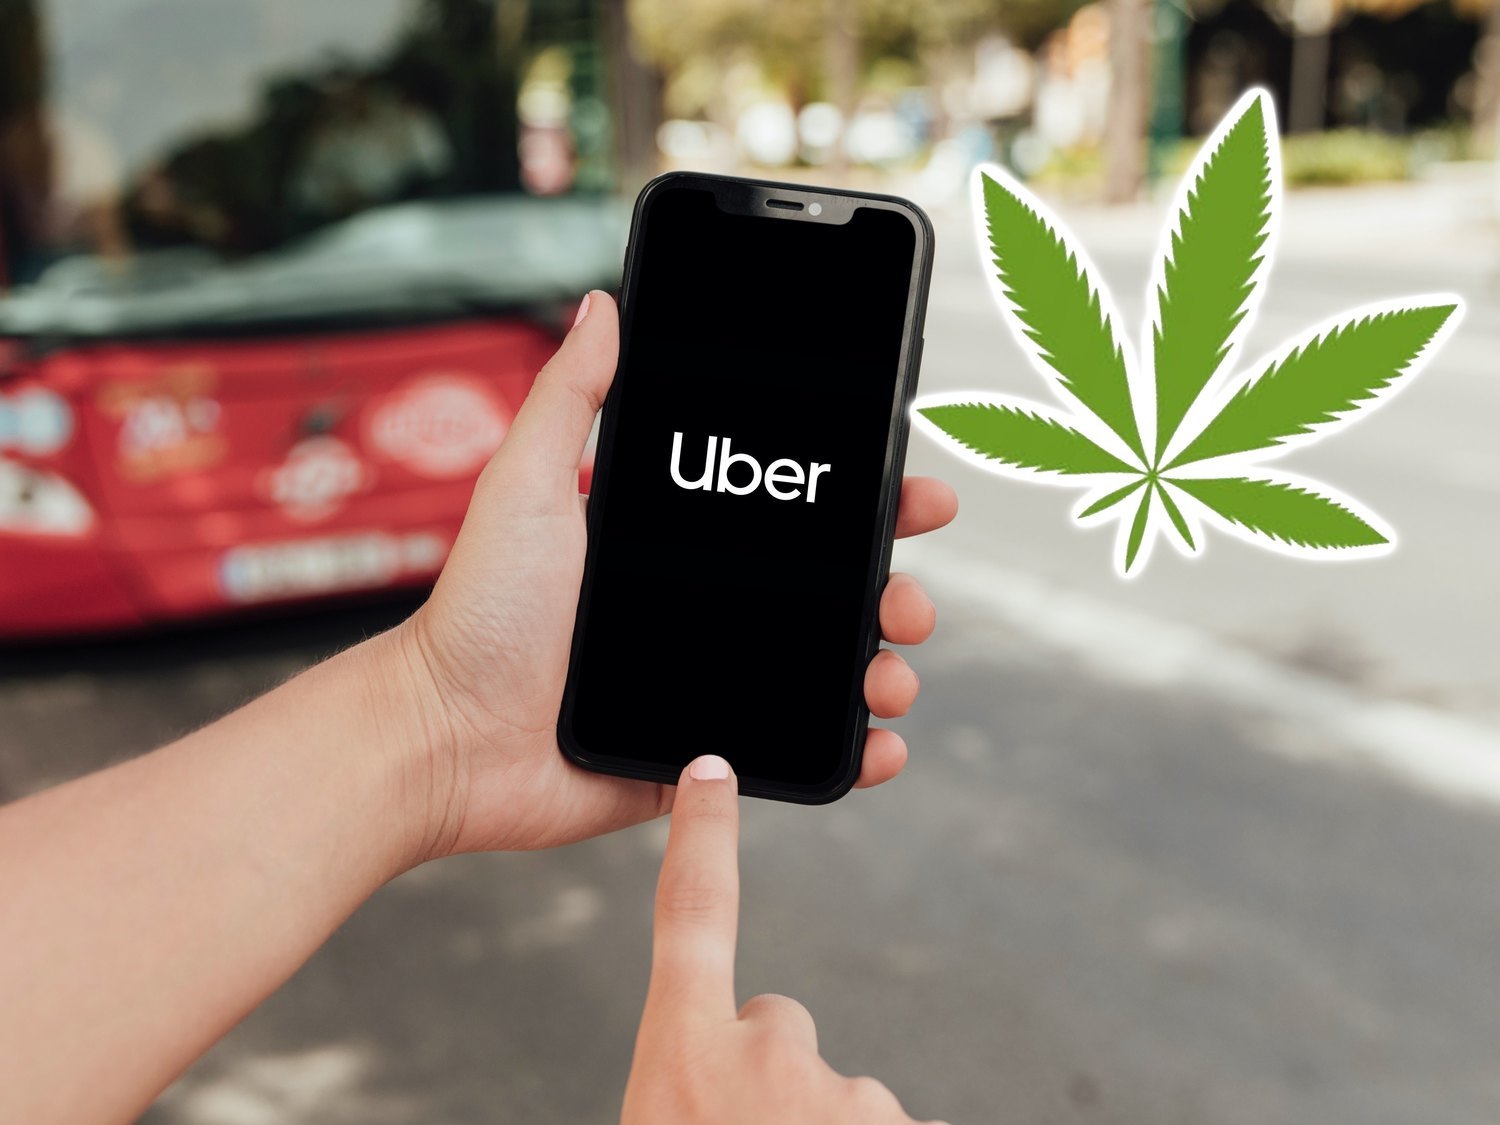 Uber repartirá marihuana a domicilio como parte de su negocio de reparto